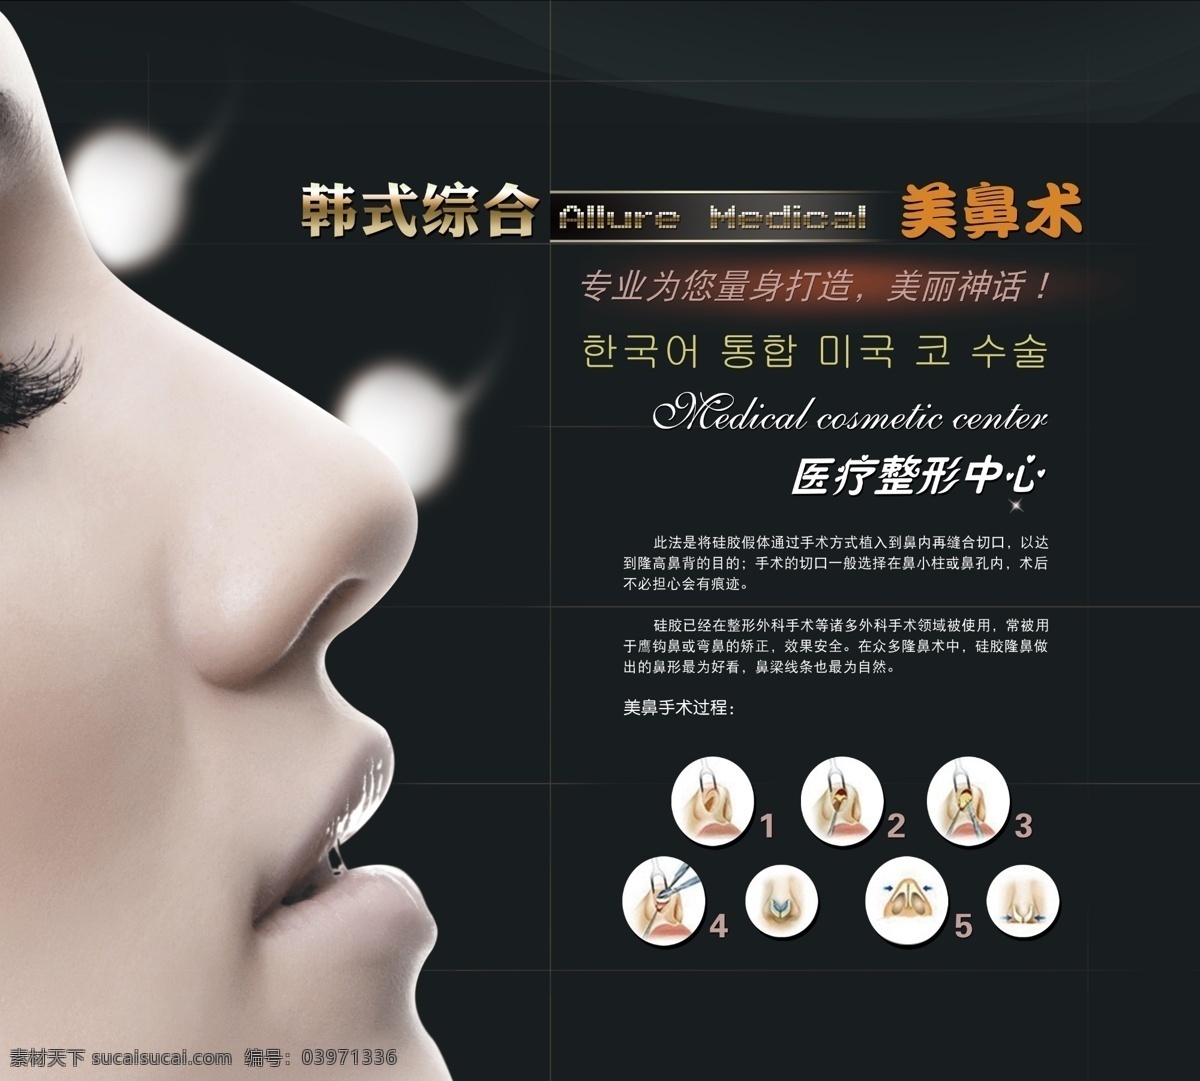 韩式隆鼻 文件 鼻子 侧面 隆鼻 美女 五官 医疗 医疗整形 整形 隆鼻广告 美鼻 隆鼻整形 美女侧面